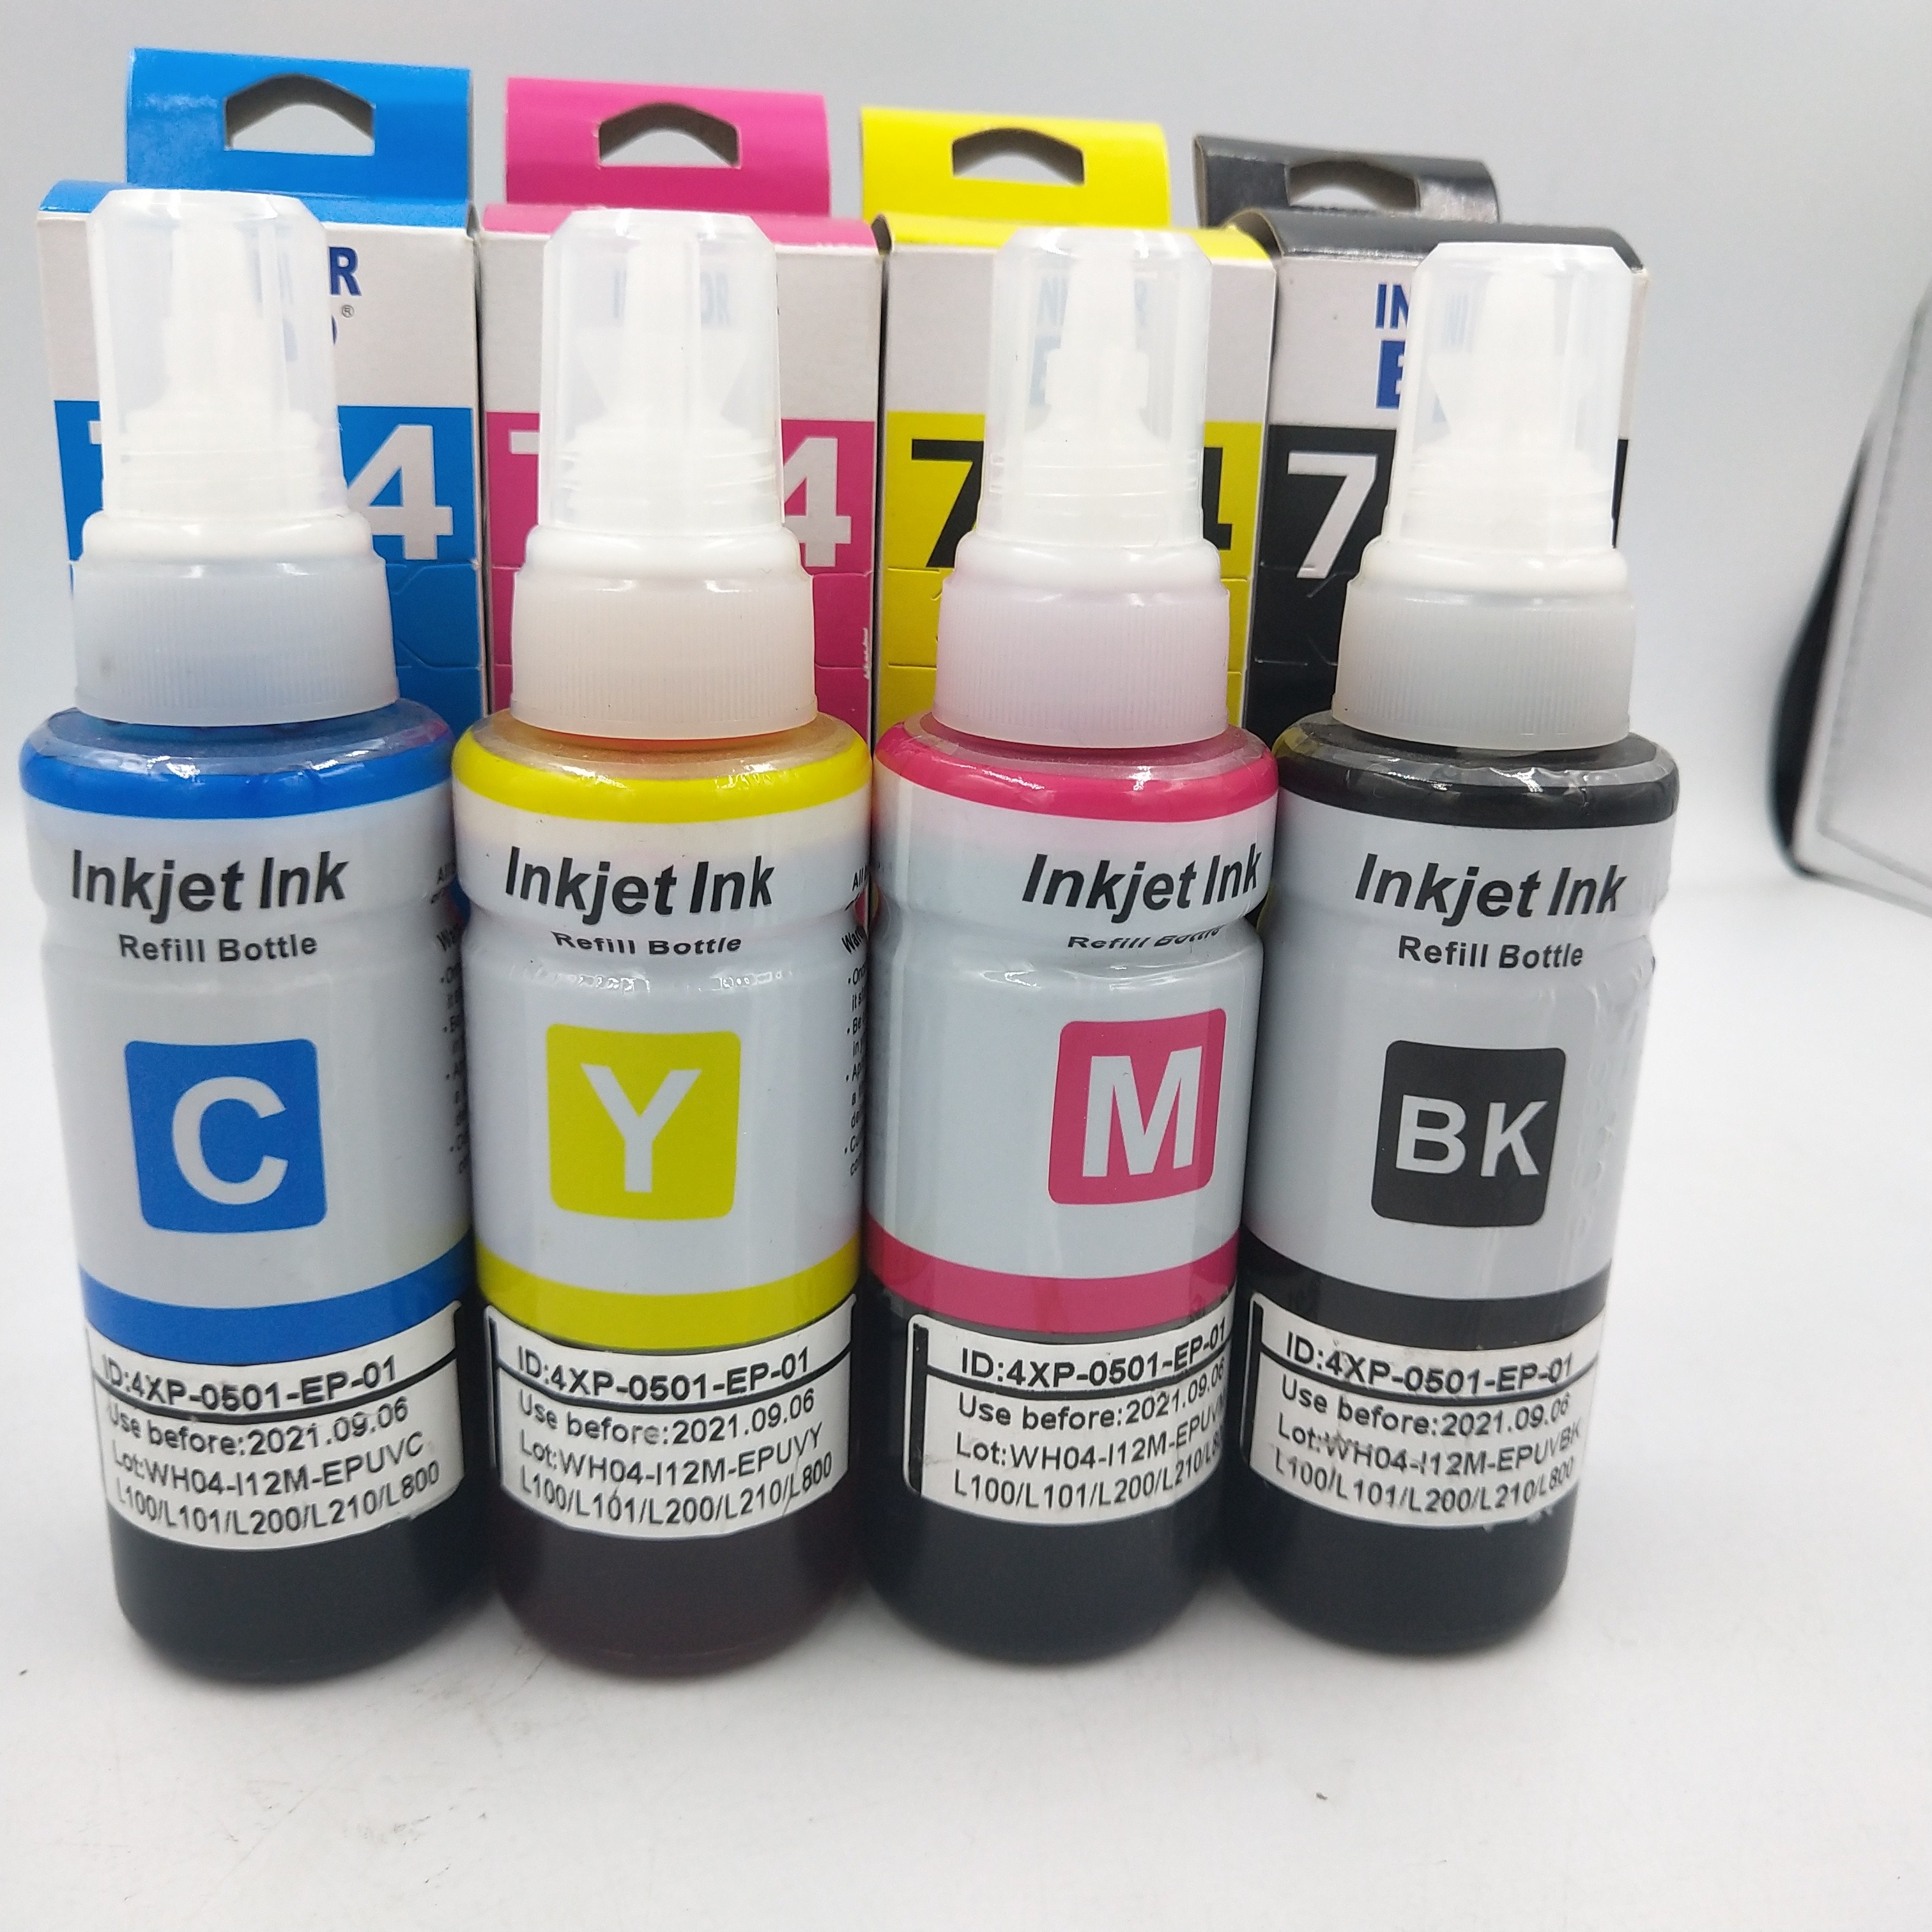 70ml tinta for Epson XP201 L805,504 664 774 UV dye ink for Epson printer.